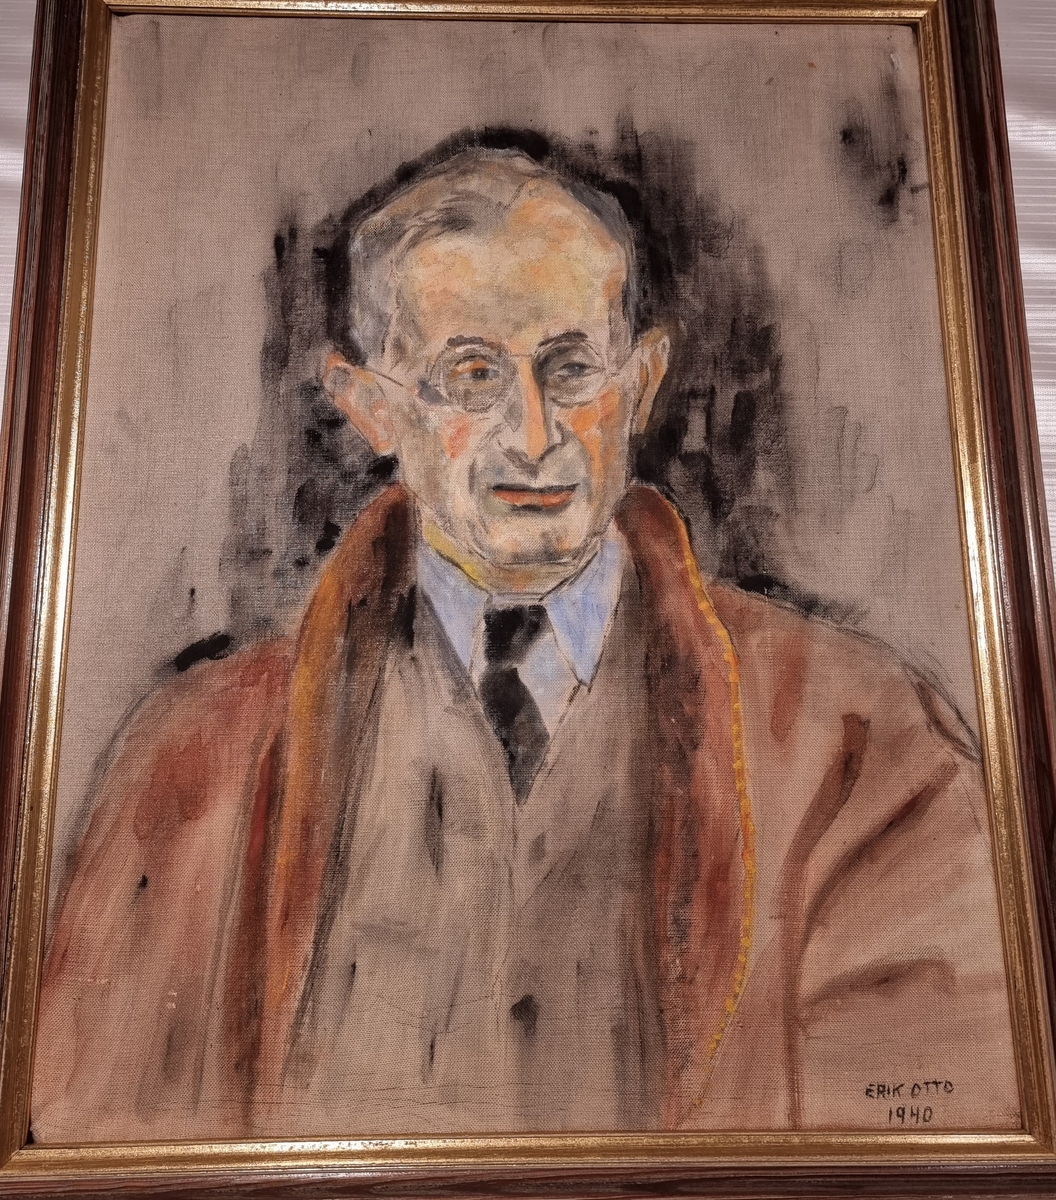 Portrett-maleri av Erik Otto Seligmann (1916-1943). Akryl på lerret med tre-ramme. Signert Erik Otto, 1940. Den portretterte er Richard Seligmann (1884-1942), Eriks far.